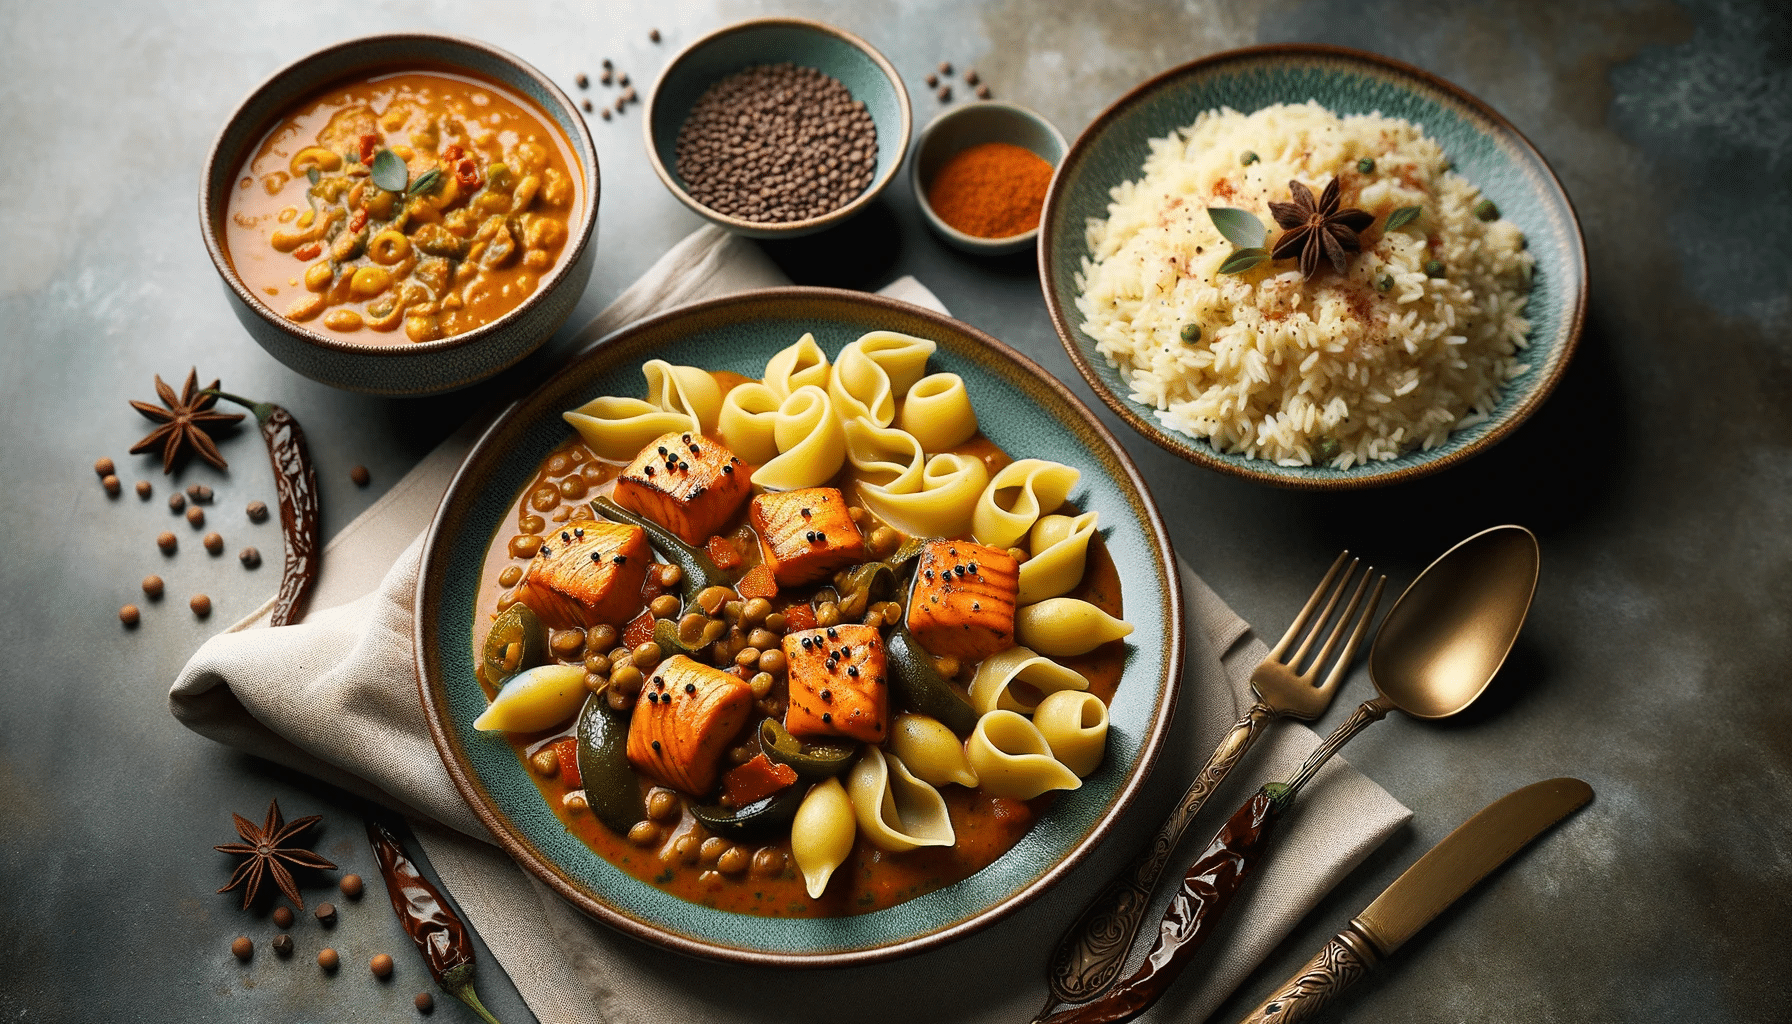 Pour un plat chaud, pensez aux pâtes au saumon fumé et brocolis, ou à un curry de lentilles accompagné de riz